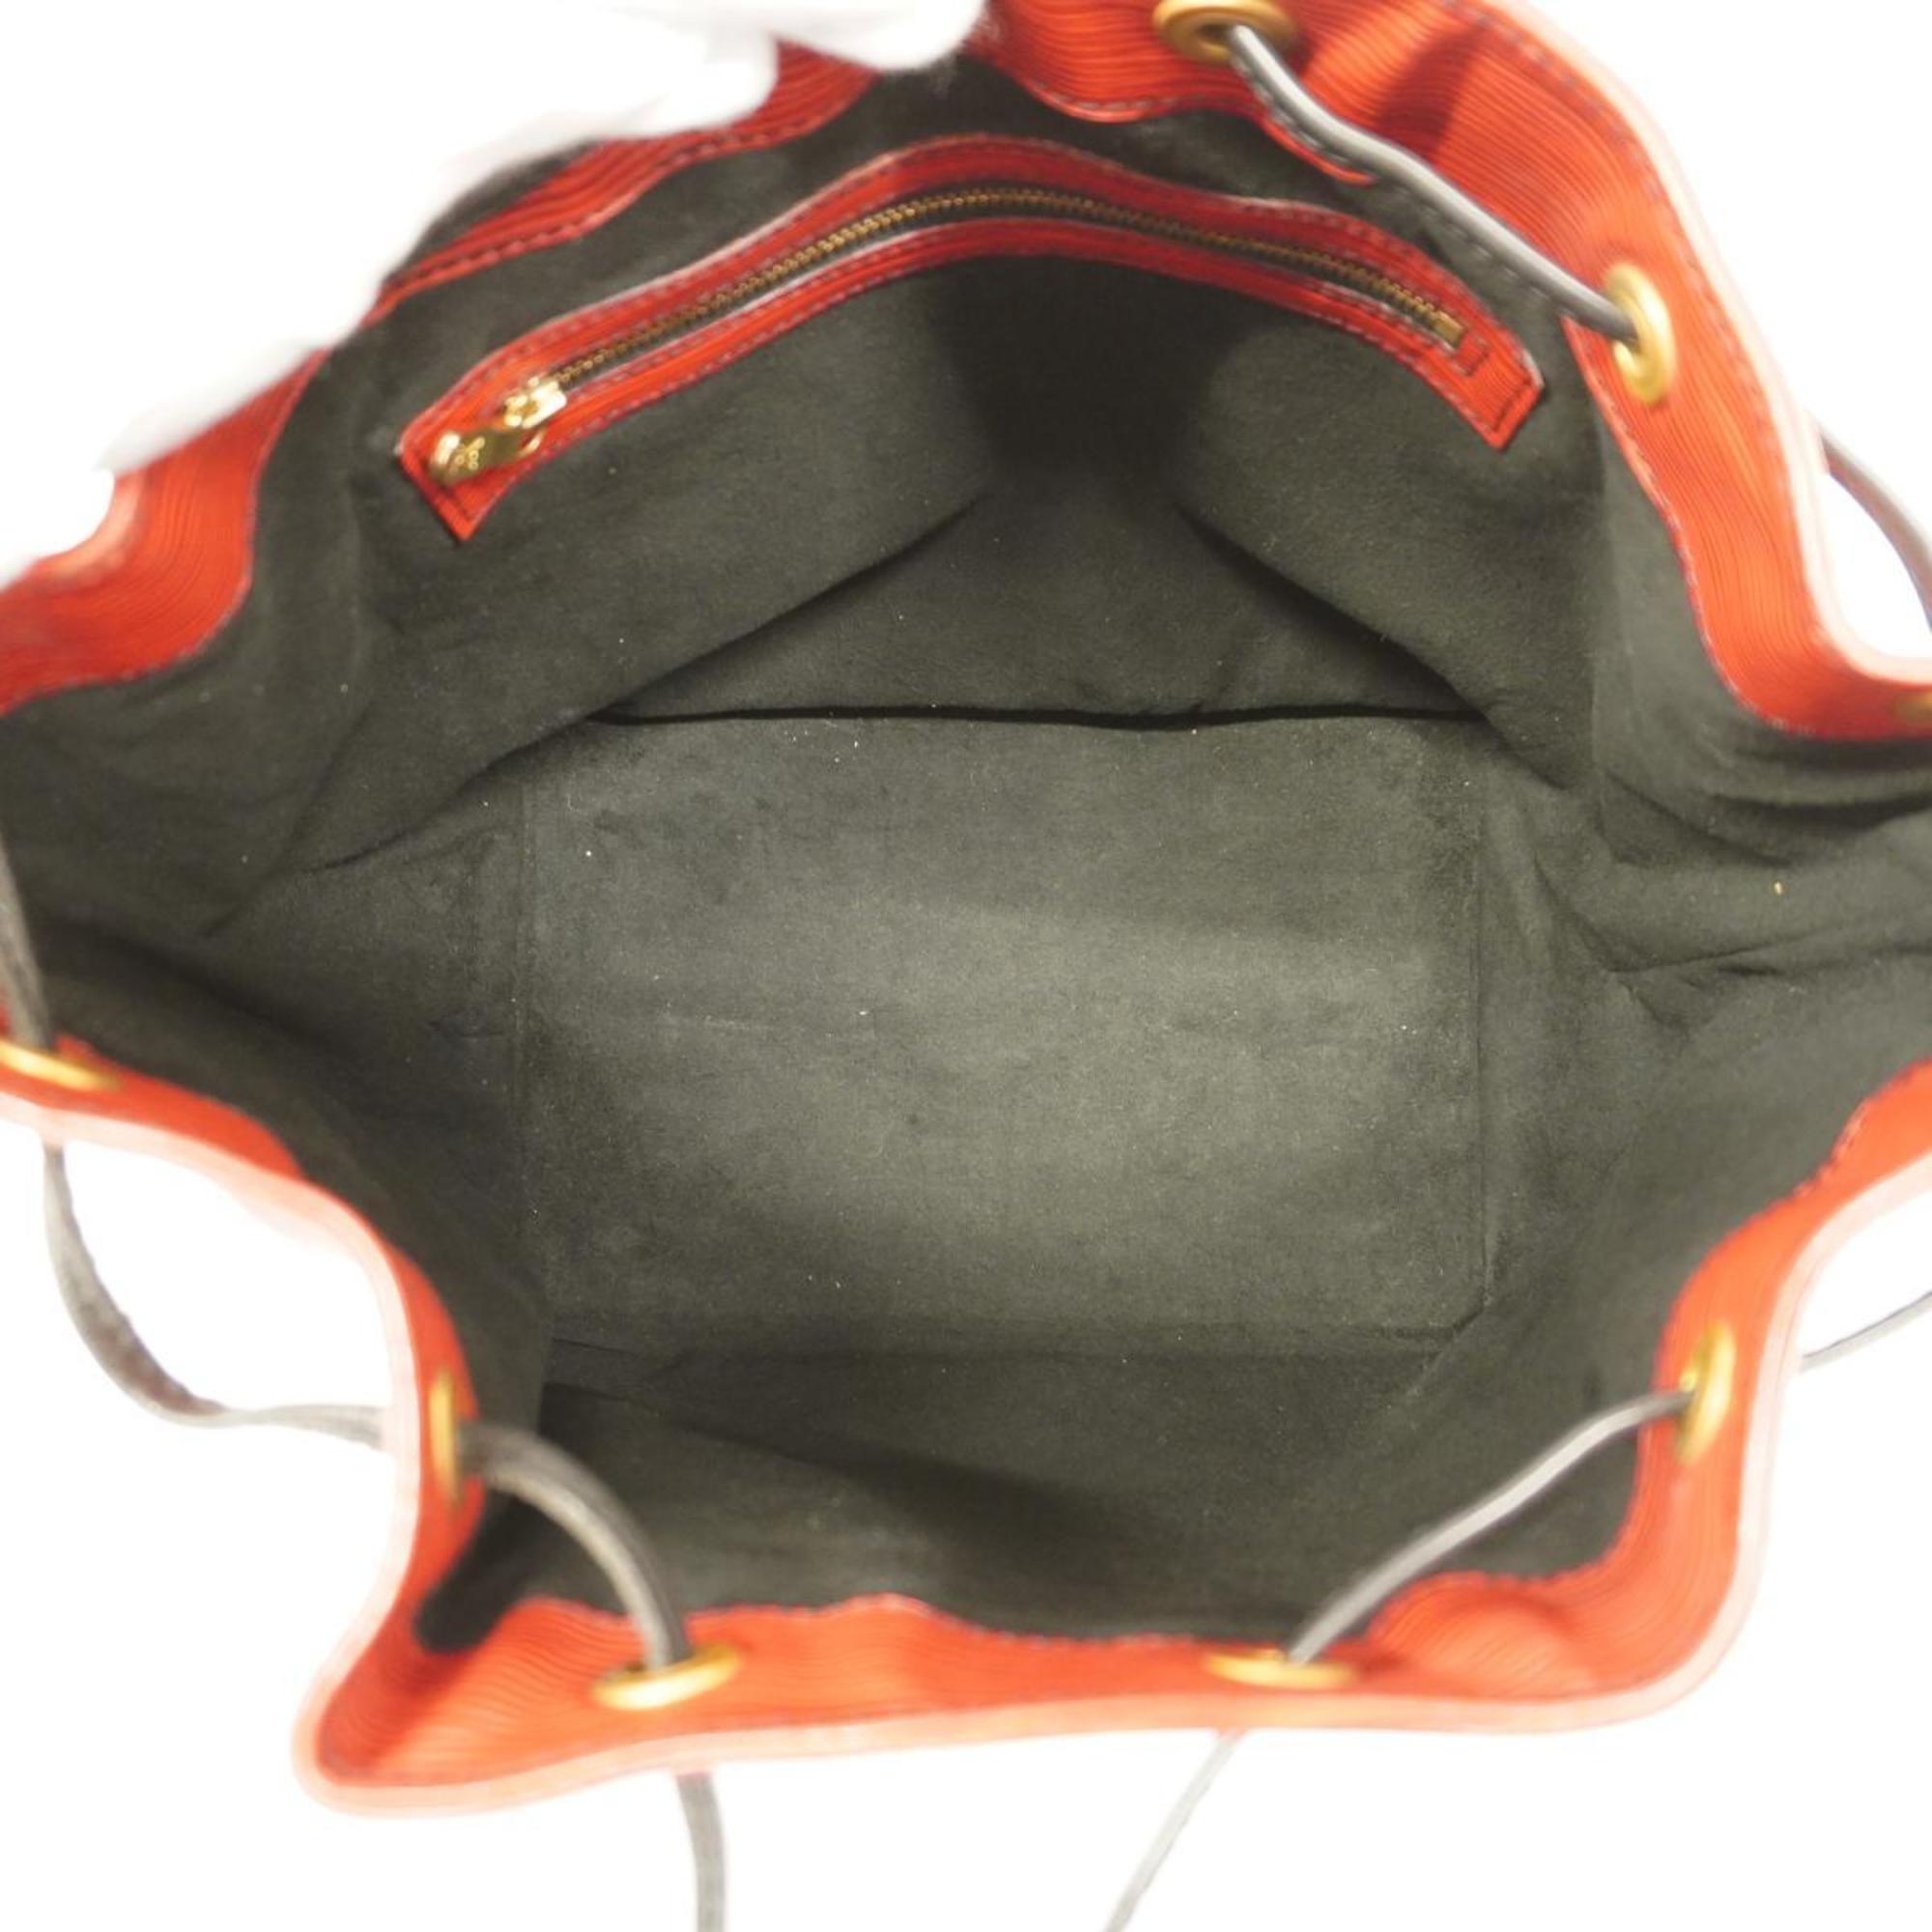 Louis Vuitton Shoulder Bag Epi Bicolor Petit Noe M44172 Castilian Red Noir Ladies